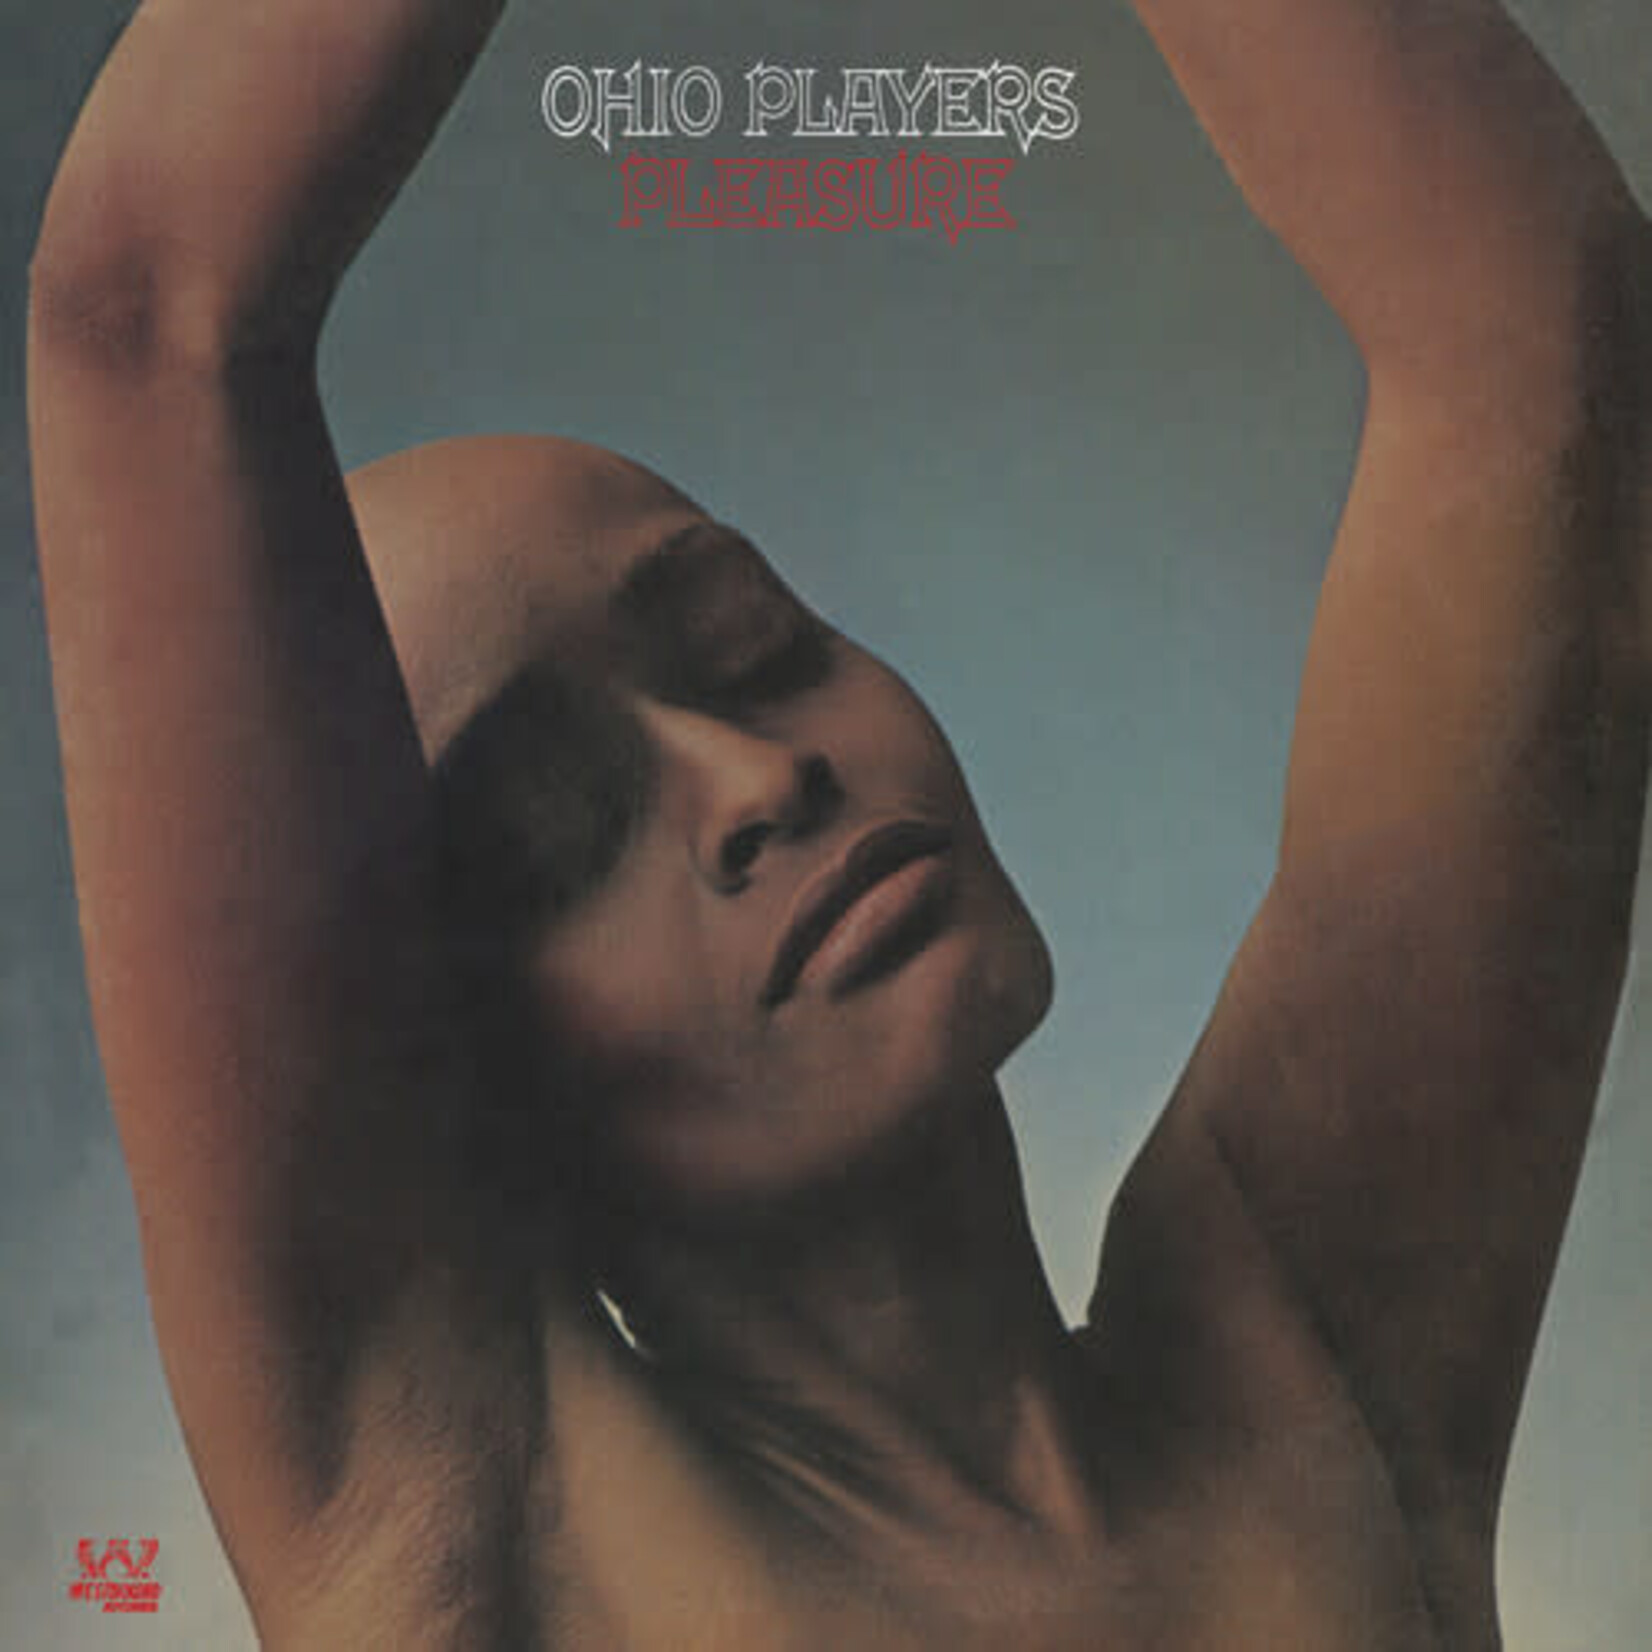 [New] Ohio Players - Pleasure (black vinyl)